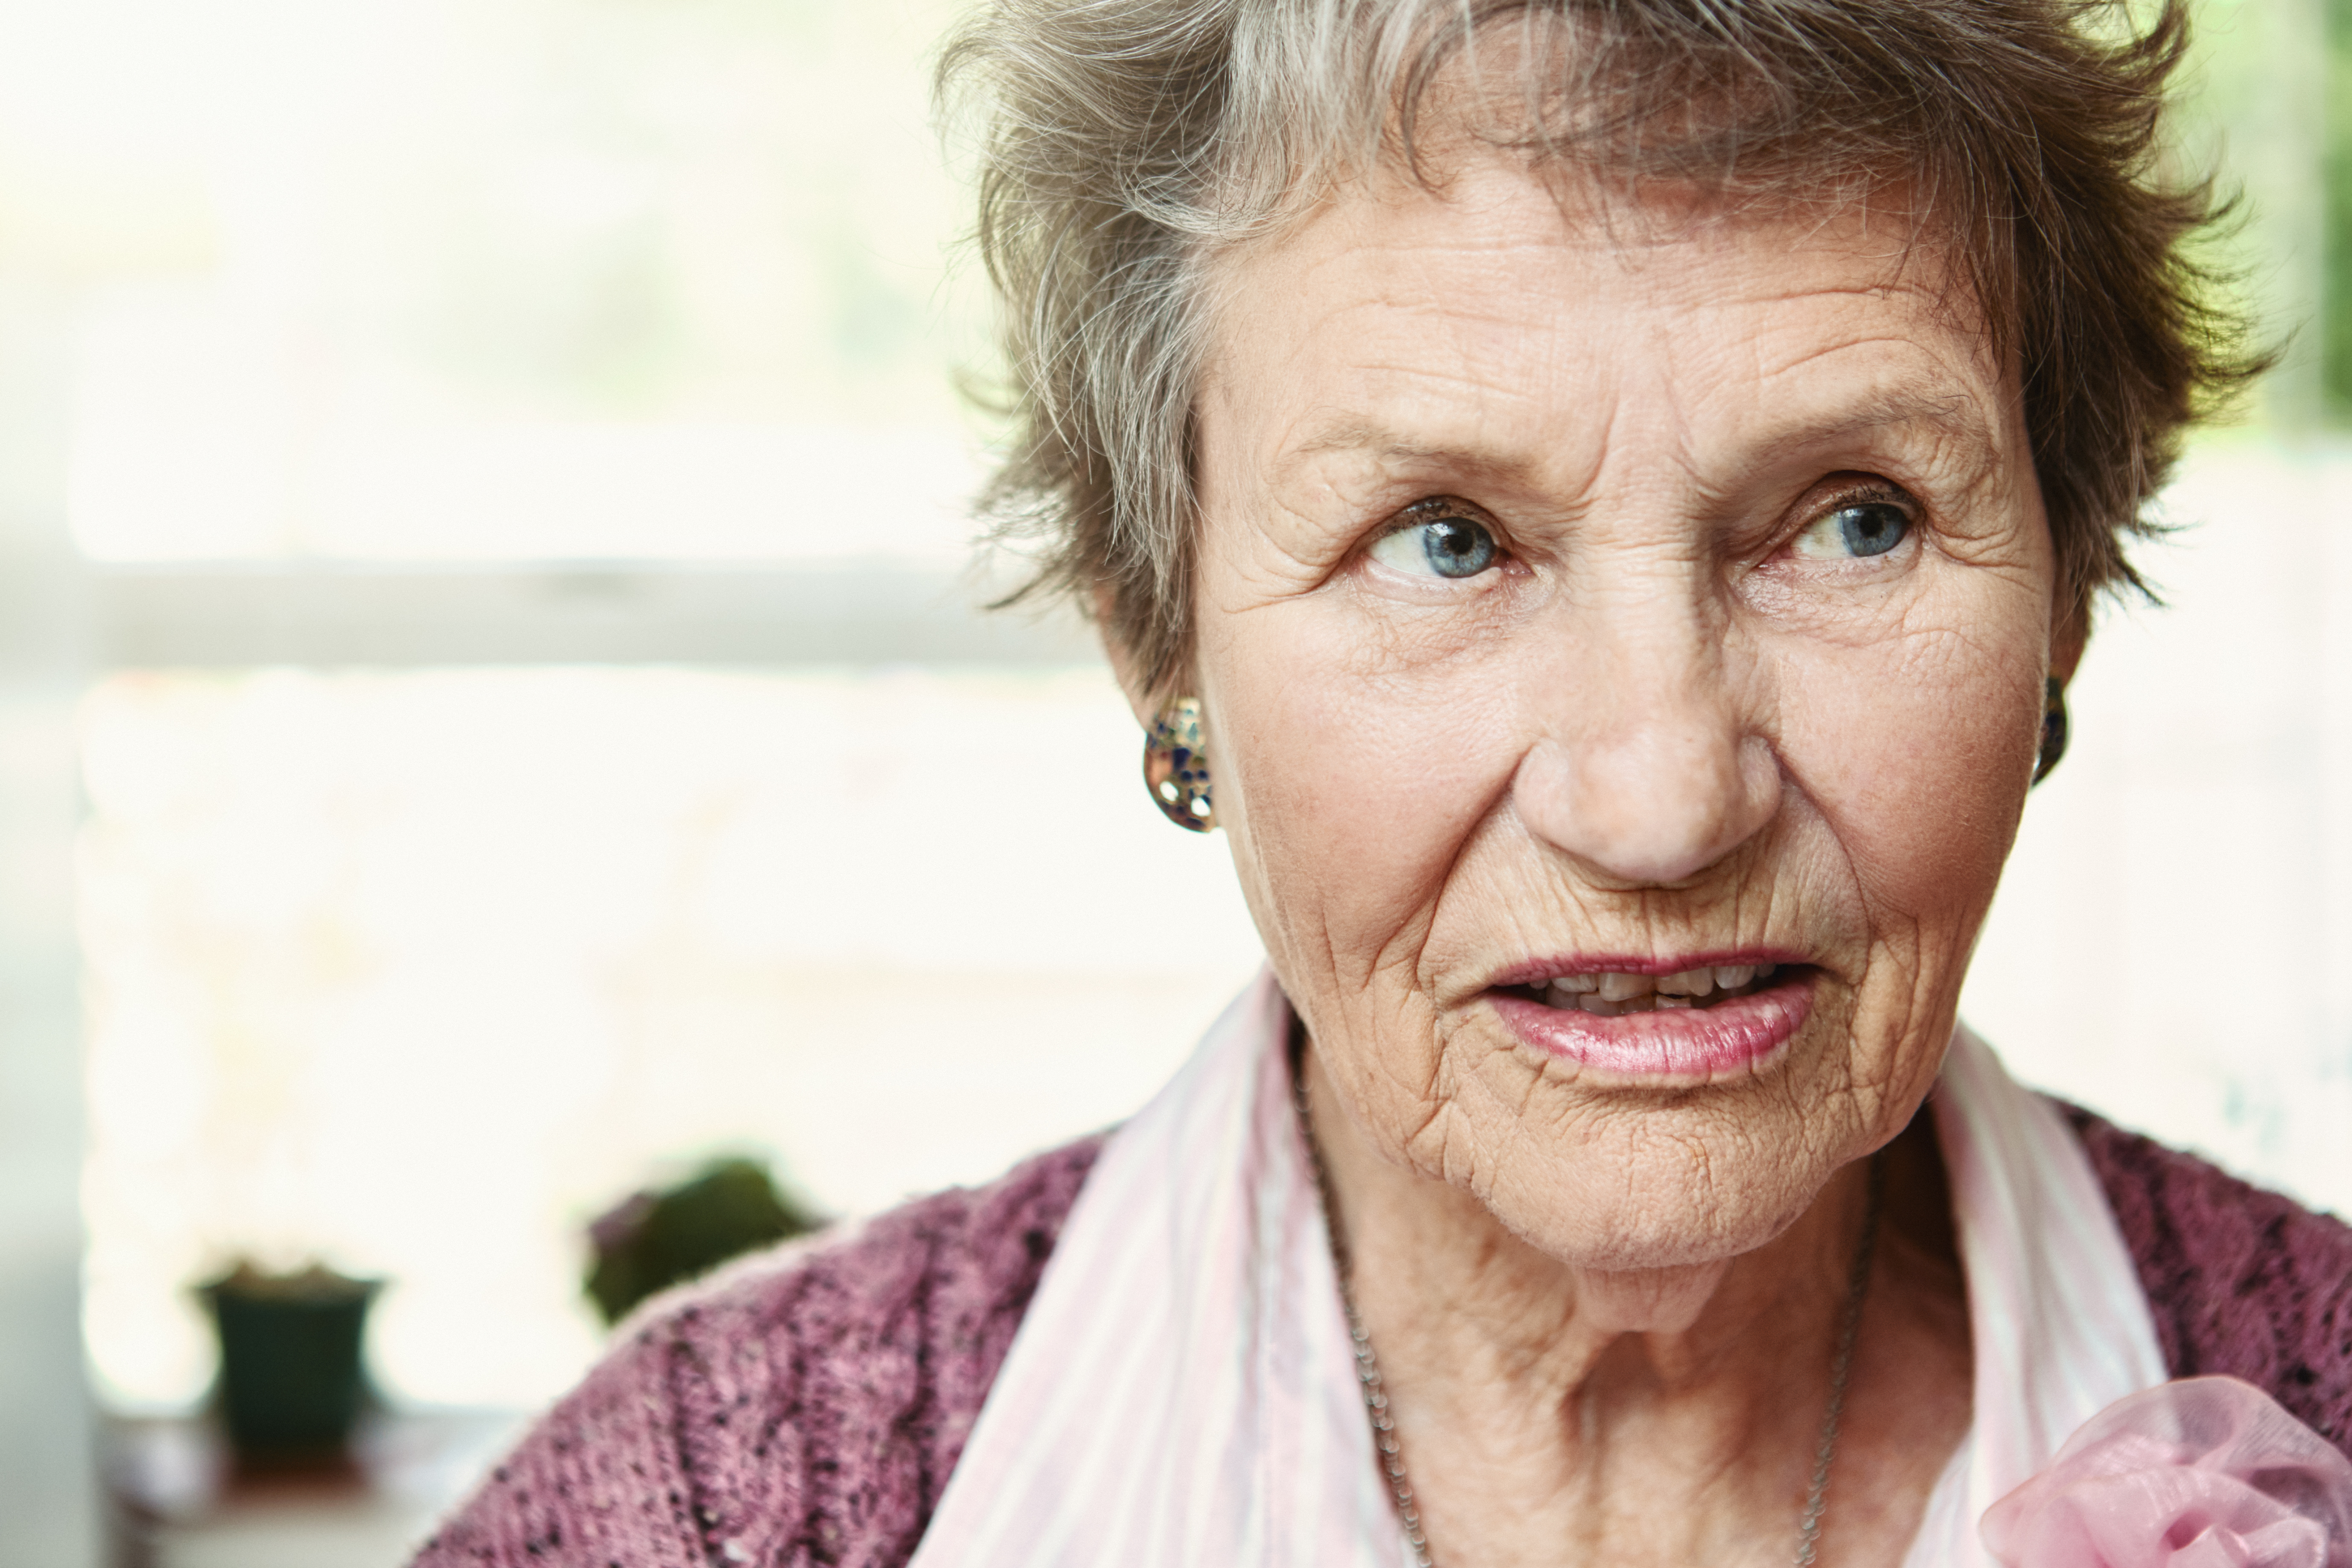 Une femme âgée de 80 ans regarde ailleurs, semblant confuse et anxieuse | Source : Getty Images